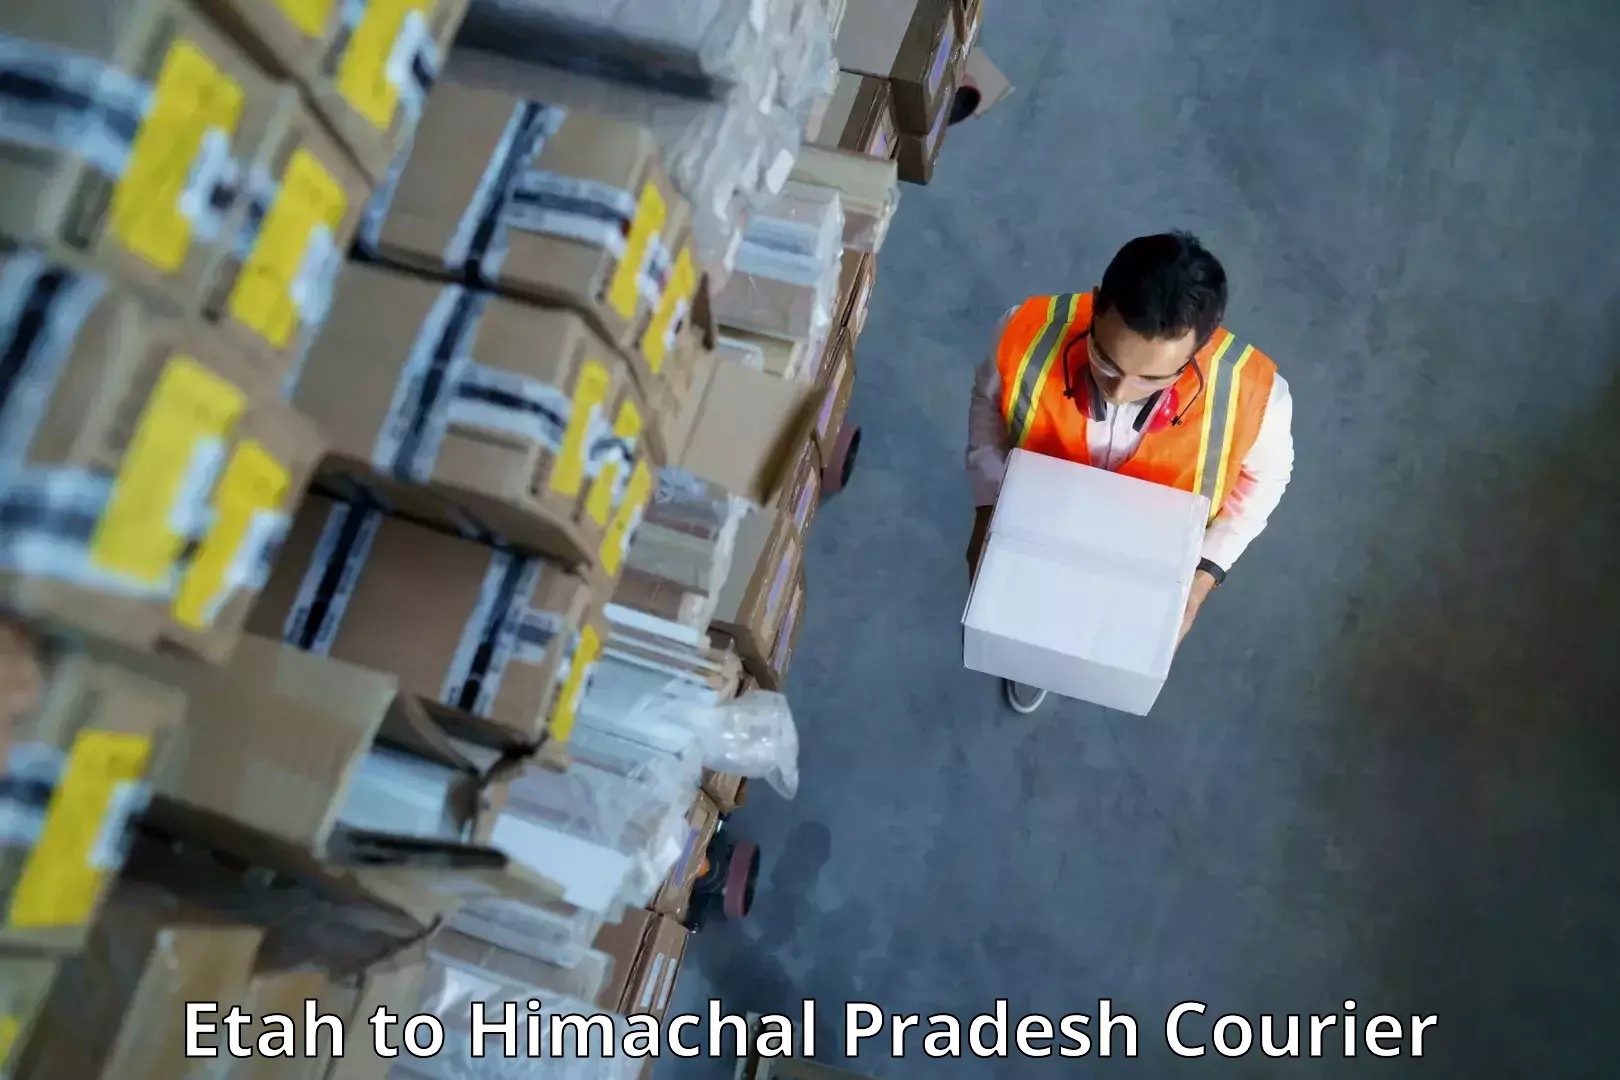 Expedited shipping methods Etah to Himachal Pradesh